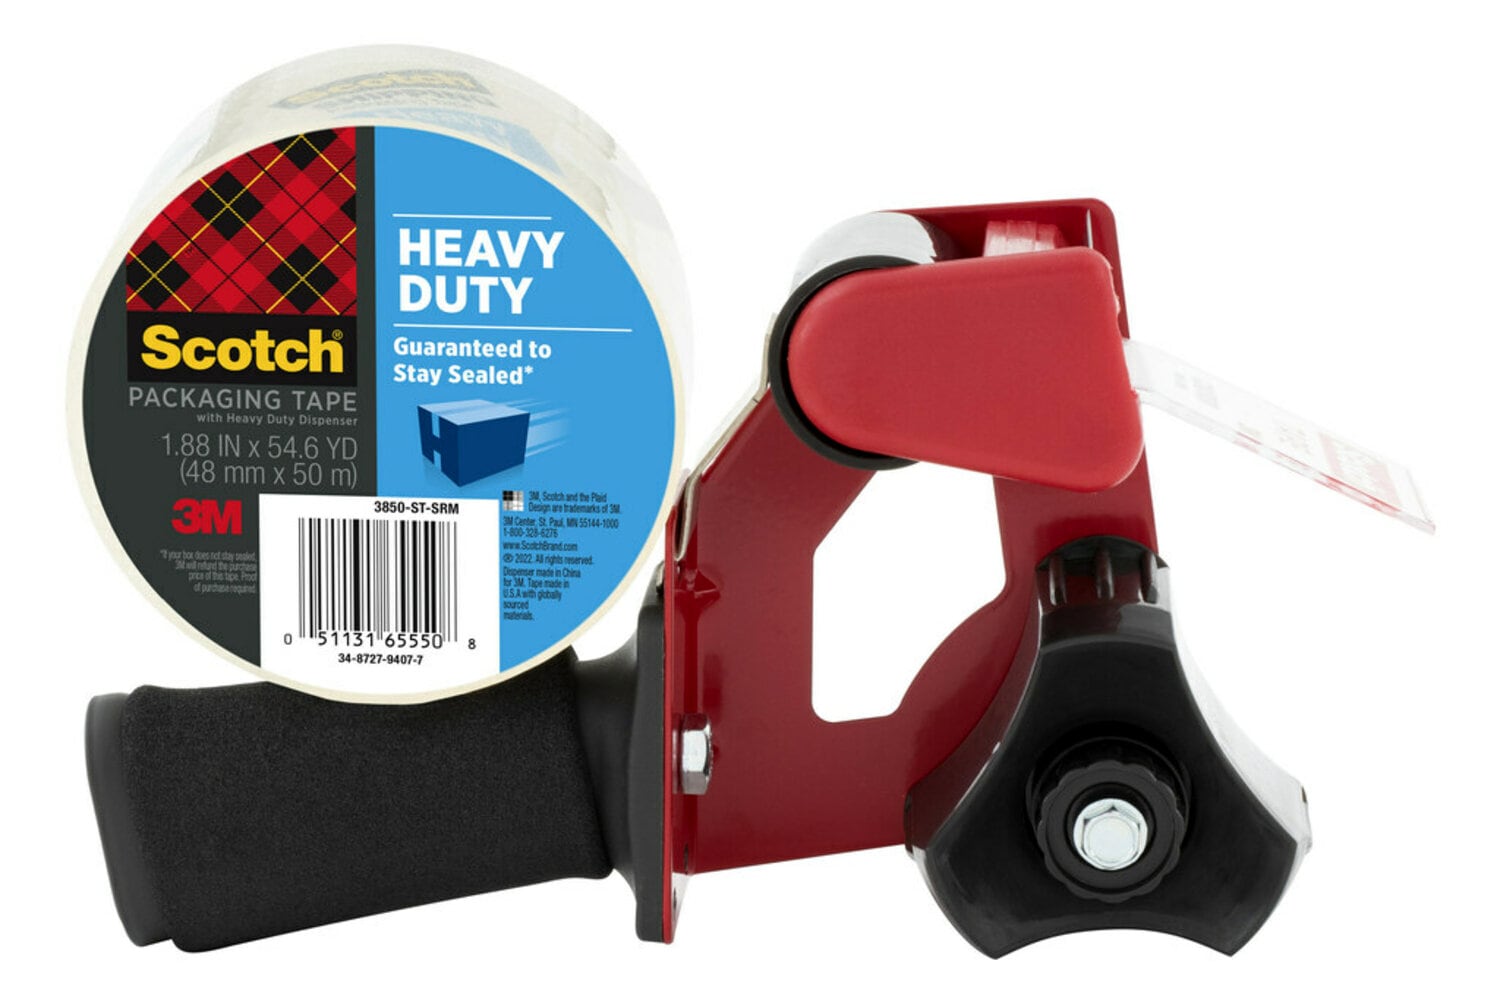 7100223486 - Scotch Heavy Duty Shipping Packaging Tape 3850-ST-SRM, 1.88 in x 54.6 yd (48 mm x 50 m), Heavy Duty Dispenser